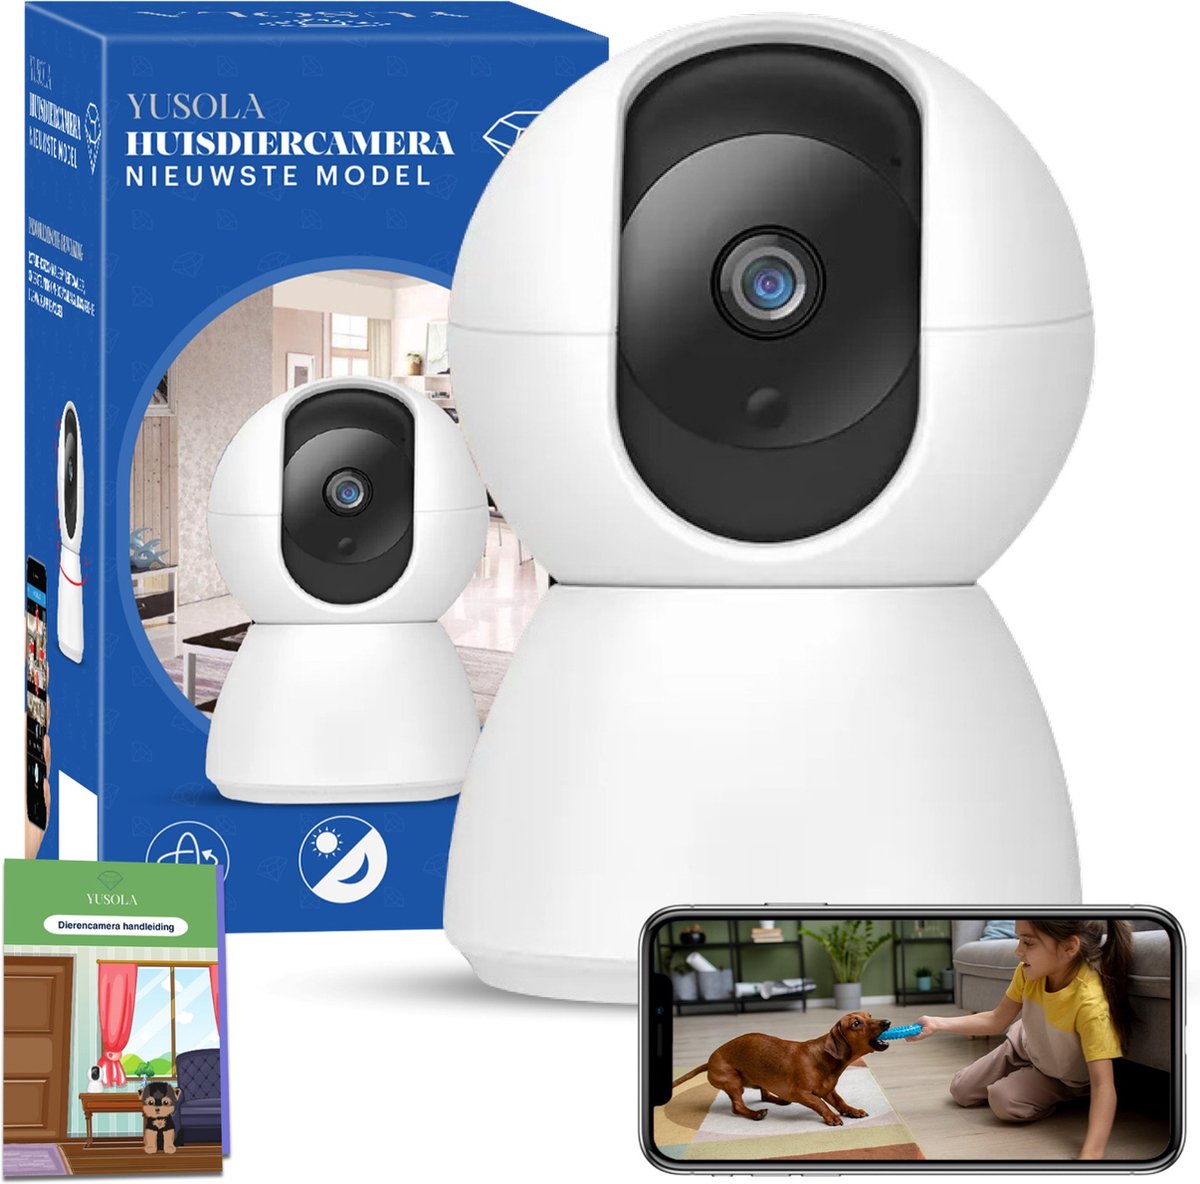 Yusola® Huisdiercamera 1080P Full HD - Beveiligingscamera Met App - Hondencamera Binnen - WiFi - INC SD Kaart 32GB - Bewegingsdetectie - Wit - Voor Hond / Katten / Dieren / Baby - Met Handleiding - Yusola